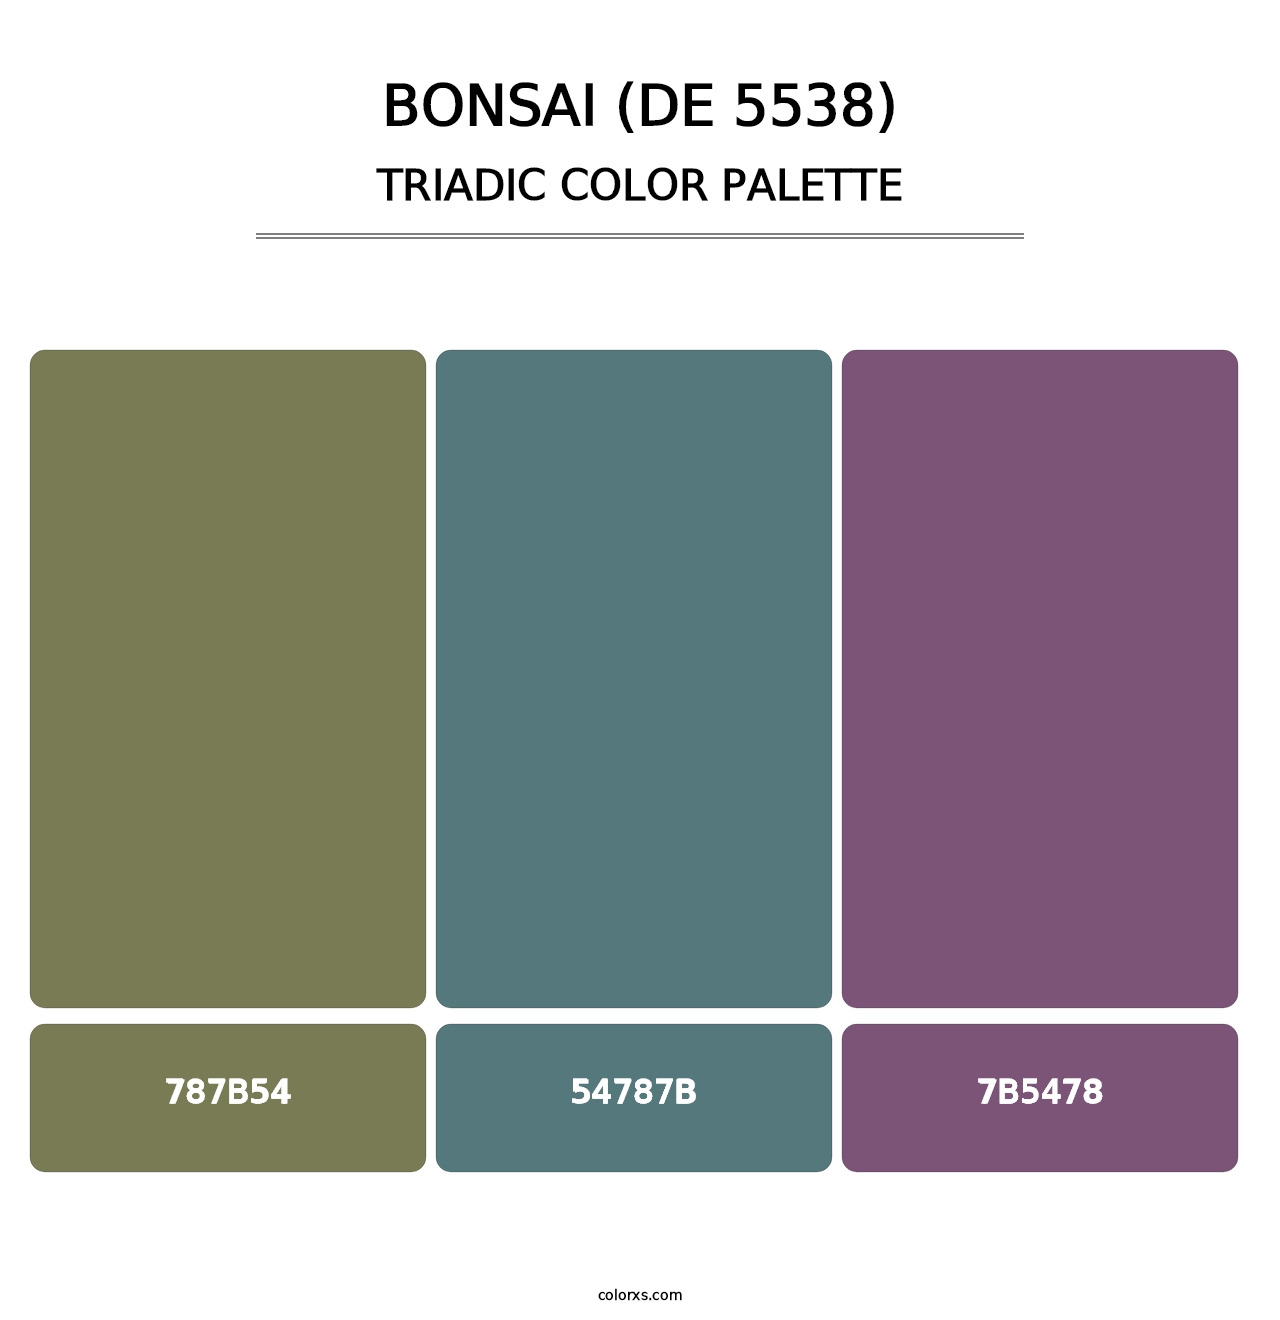 Bonsai (DE 5538) - Triadic Color Palette